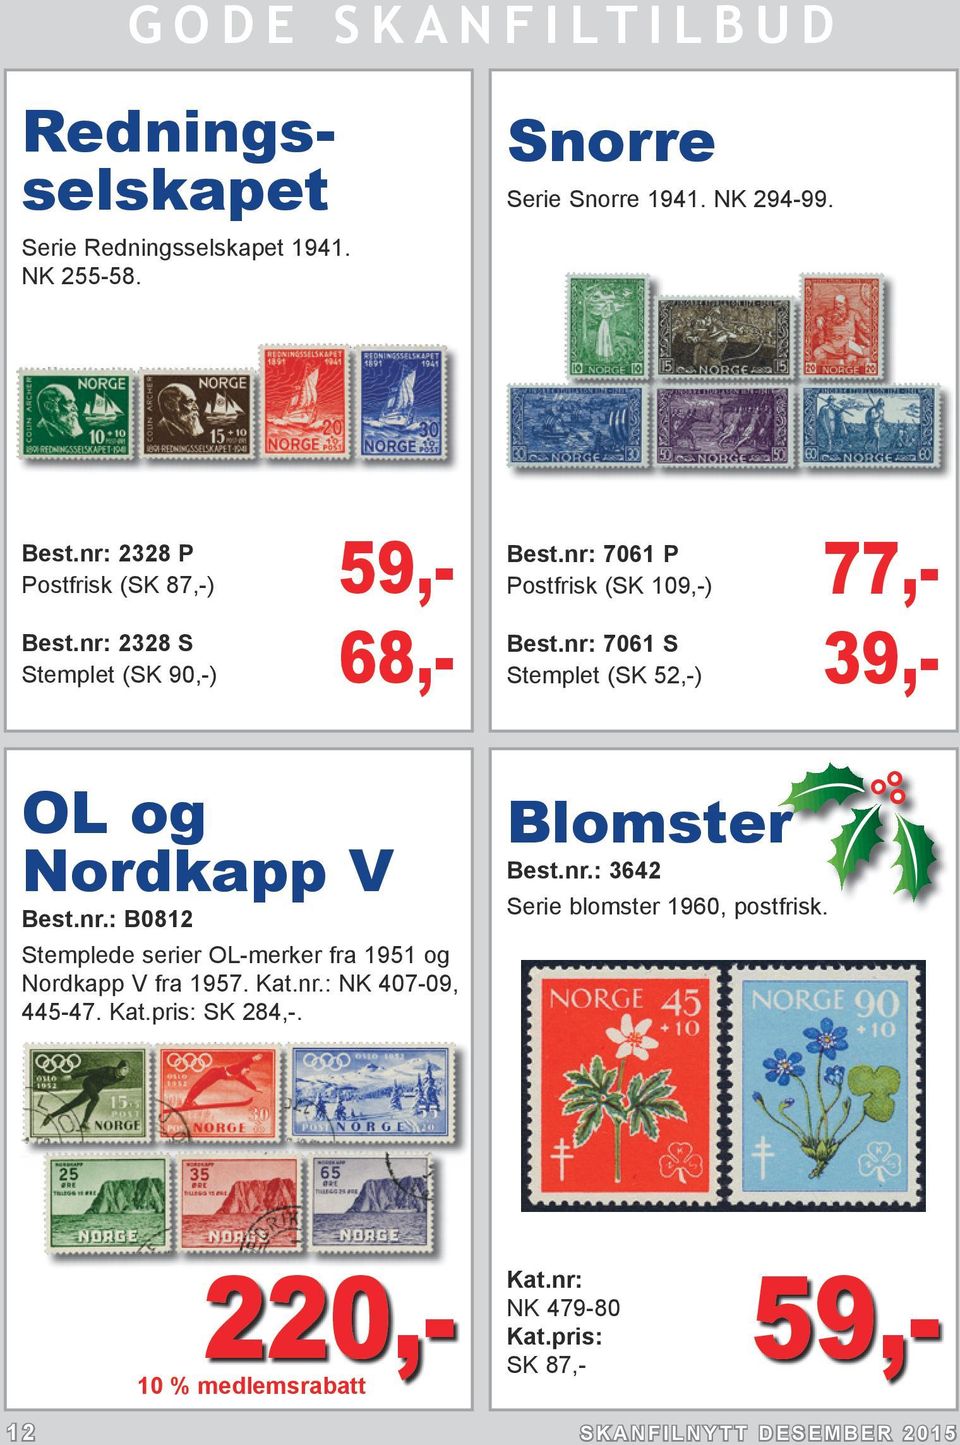 nr: 7061 S Stemplet (SK 52,-) 39,- OL og Nordkapp V Best.nr.: B0812 Stemplede serier OL-merker fra 1951 og Nordkapp V fra 1957.